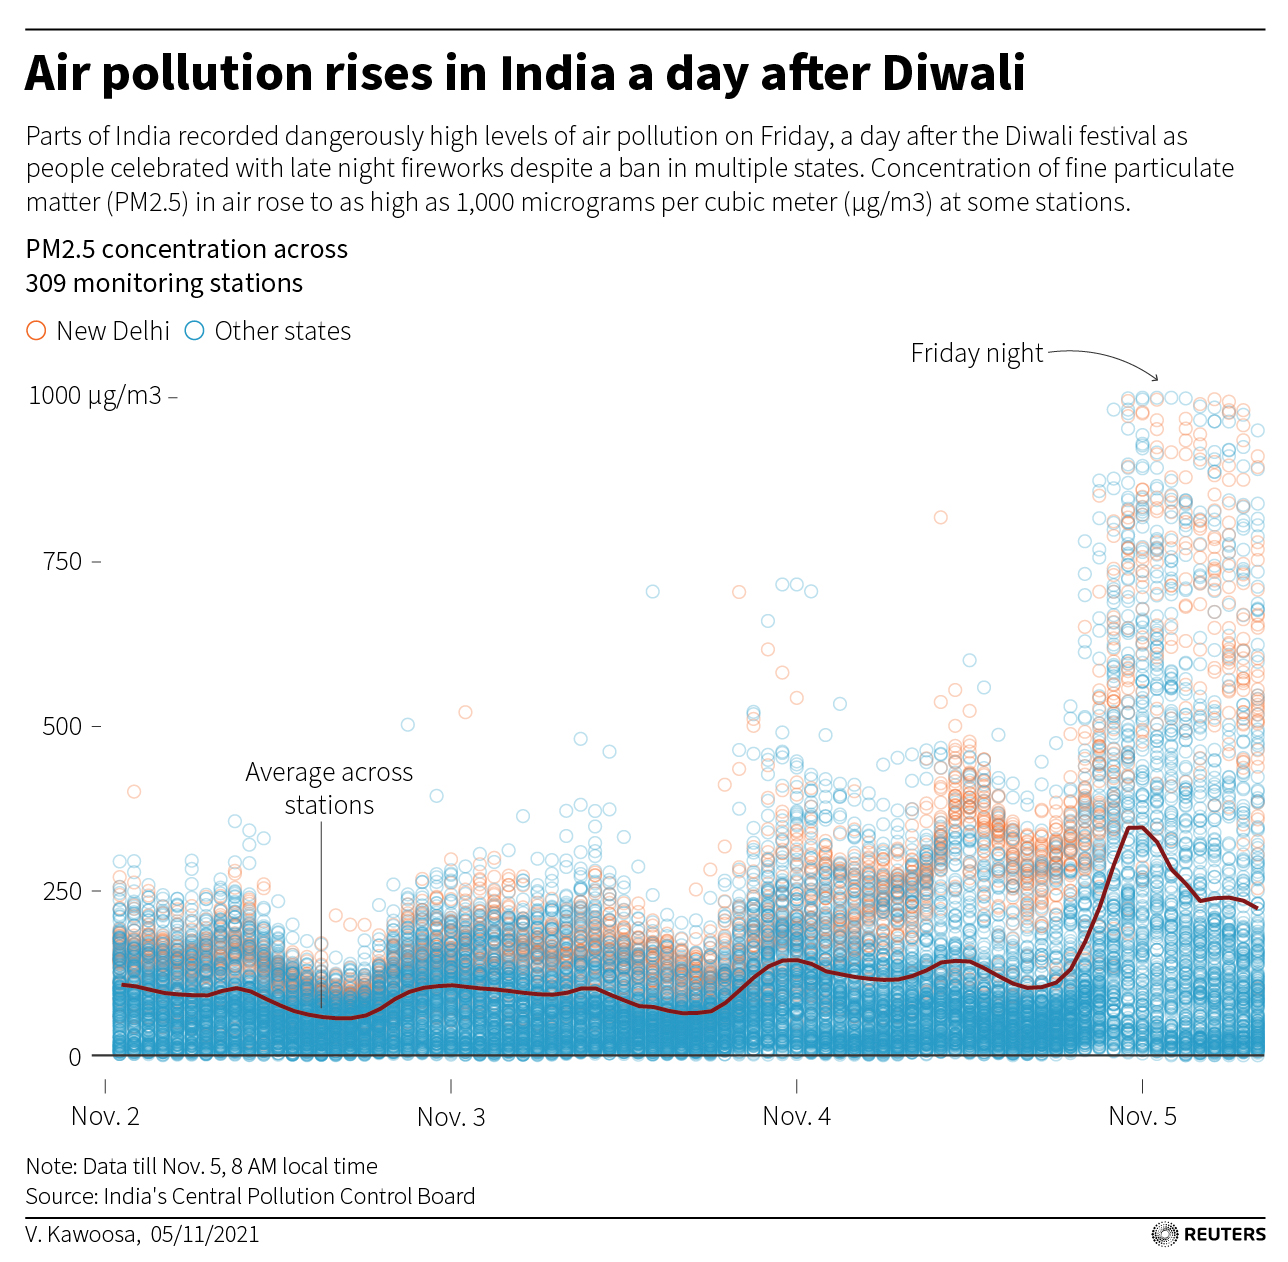 Nonostante sia stato vietato in molti stati, venerdì, un giorno dopo il festival Deepavali, sono stati segnalati livelli pericolosi di inquinamento atmosferico in alcune parti dell'India, mentre le persone celebravano con fuochi d'artificio di notte.